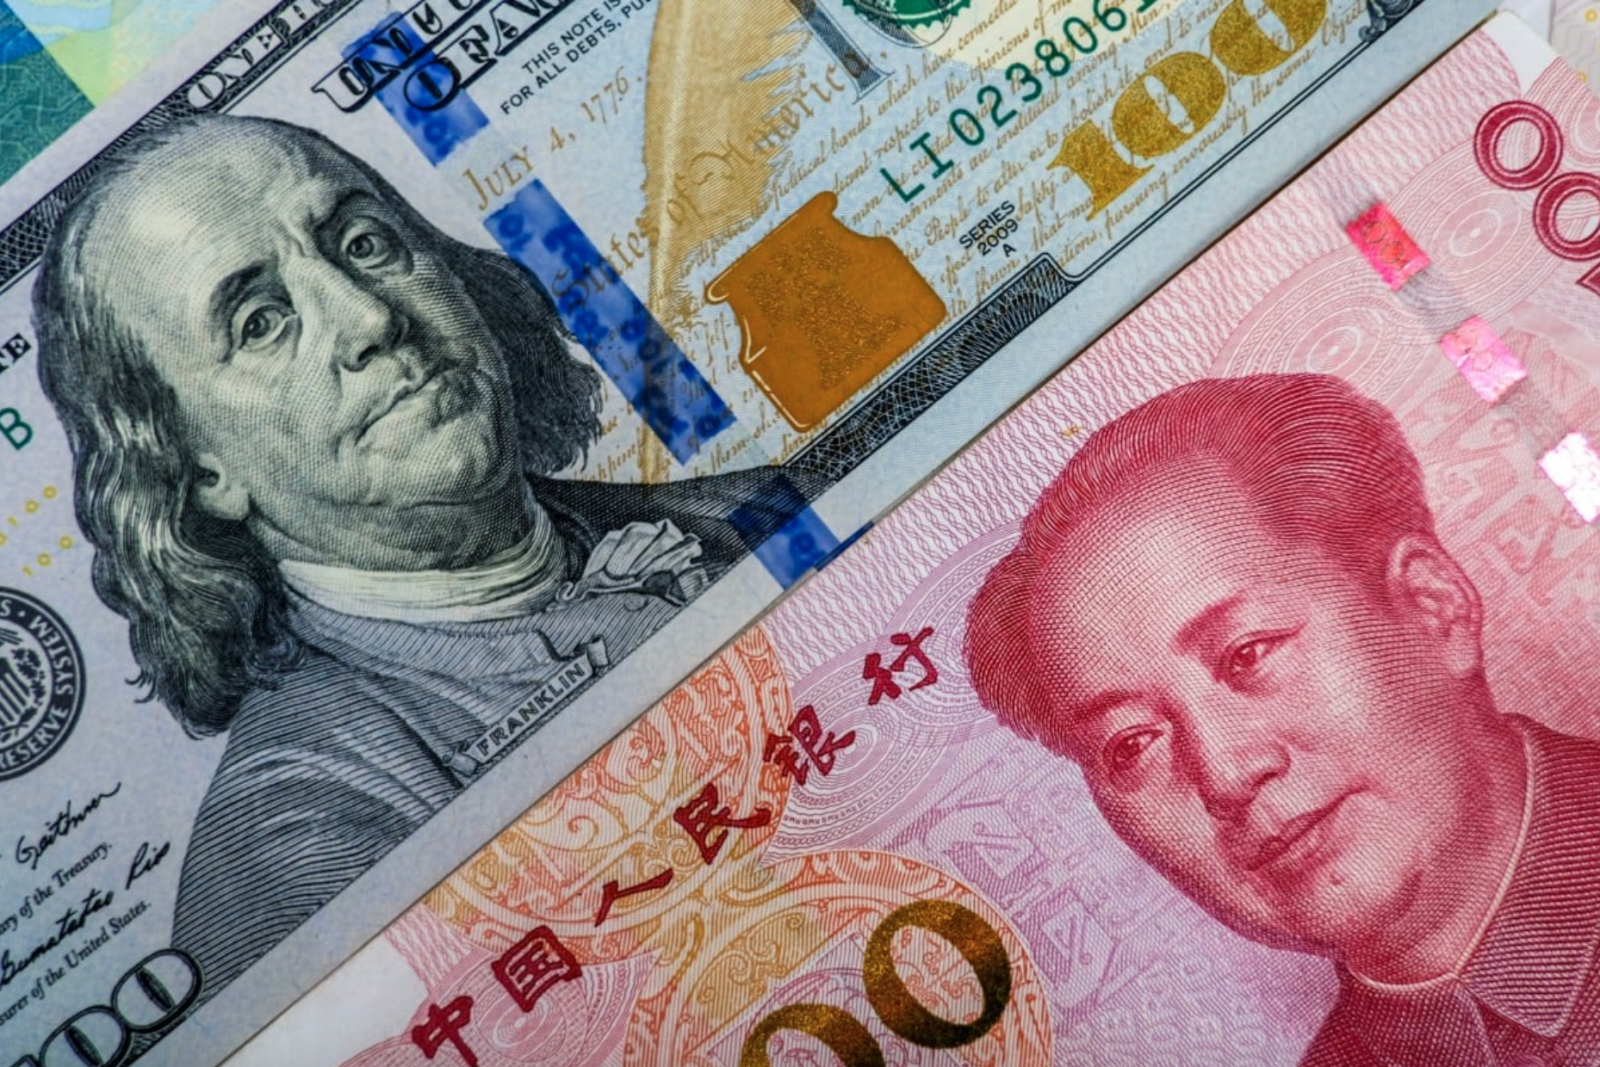  Đồng Nhân dân tệ đã giảm trung bình 0,53% so với đồng đô la Mỹ kể từ ngày 20/3, bất chấp tỷ giá được Ngân hàng Nhân dân Trung Quốc (PBoC) ấn định một cách mạnh mẽ